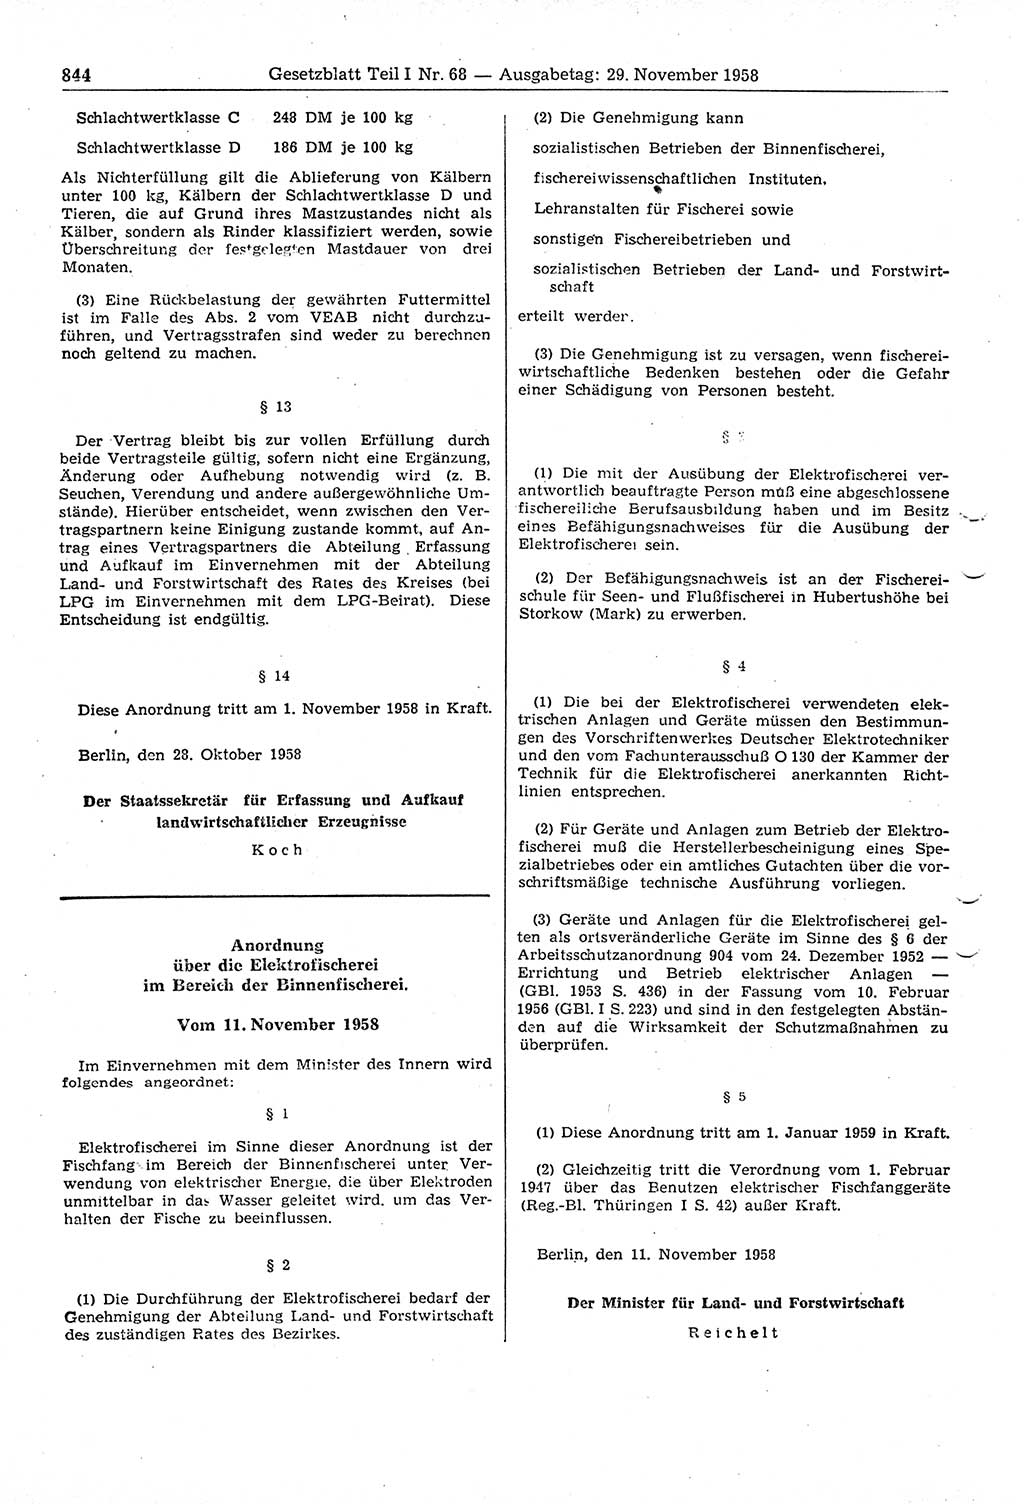 Gesetzblatt (GBl.) der Deutschen Demokratischen Republik (DDR) Teil Ⅰ 1958, Seite 844 (GBl. DDR Ⅰ 1958, S. 844)